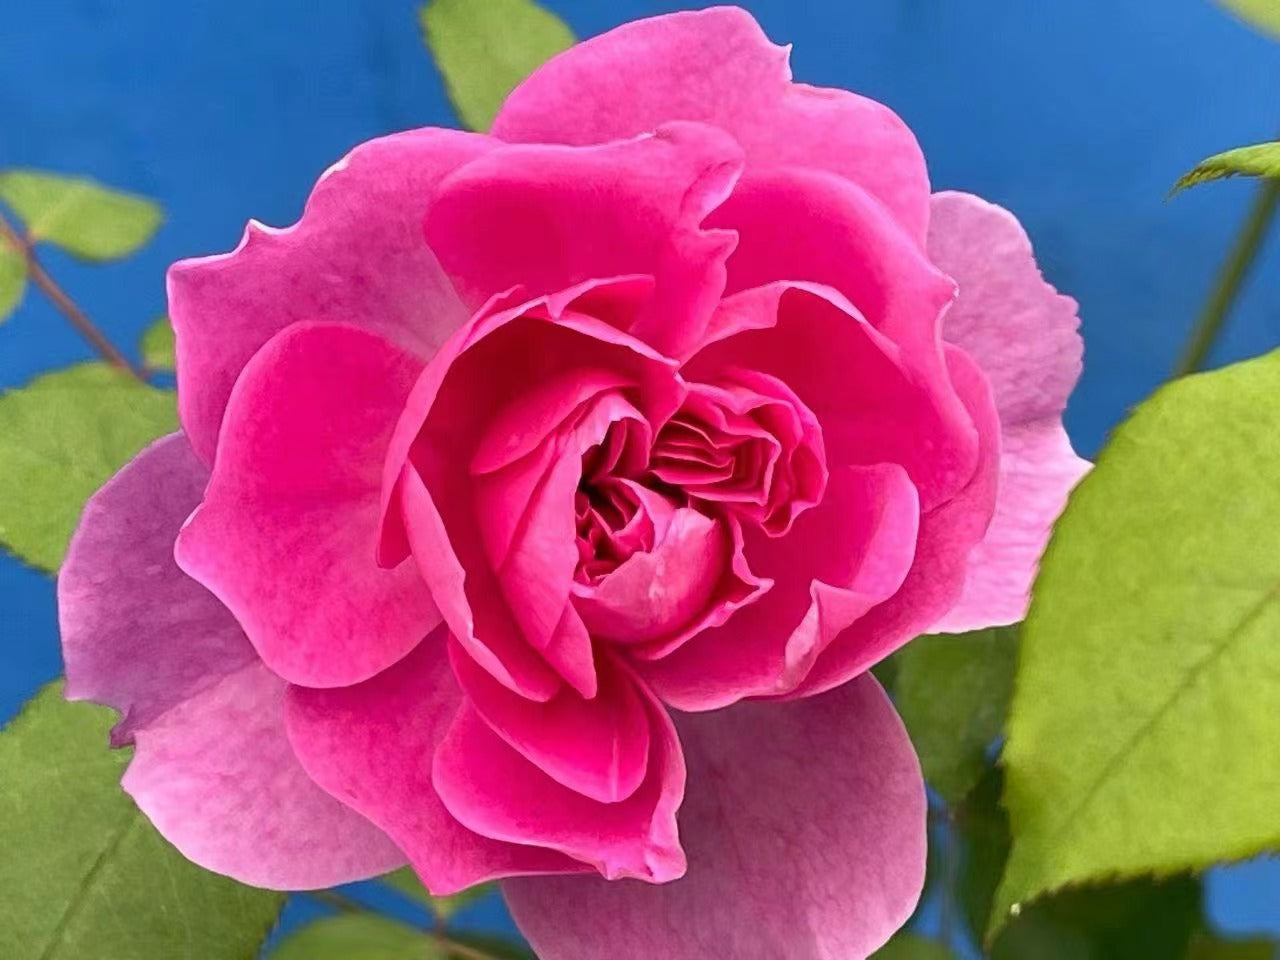 Rose【Raphael |ラファエル】 -1 GalOwnRoot｜Israfel| 河本 純子| Heat Resistant| 拉斐尔天使| Easy to Grow| つるバラ| Long flowering period| Strong Disease Resistance